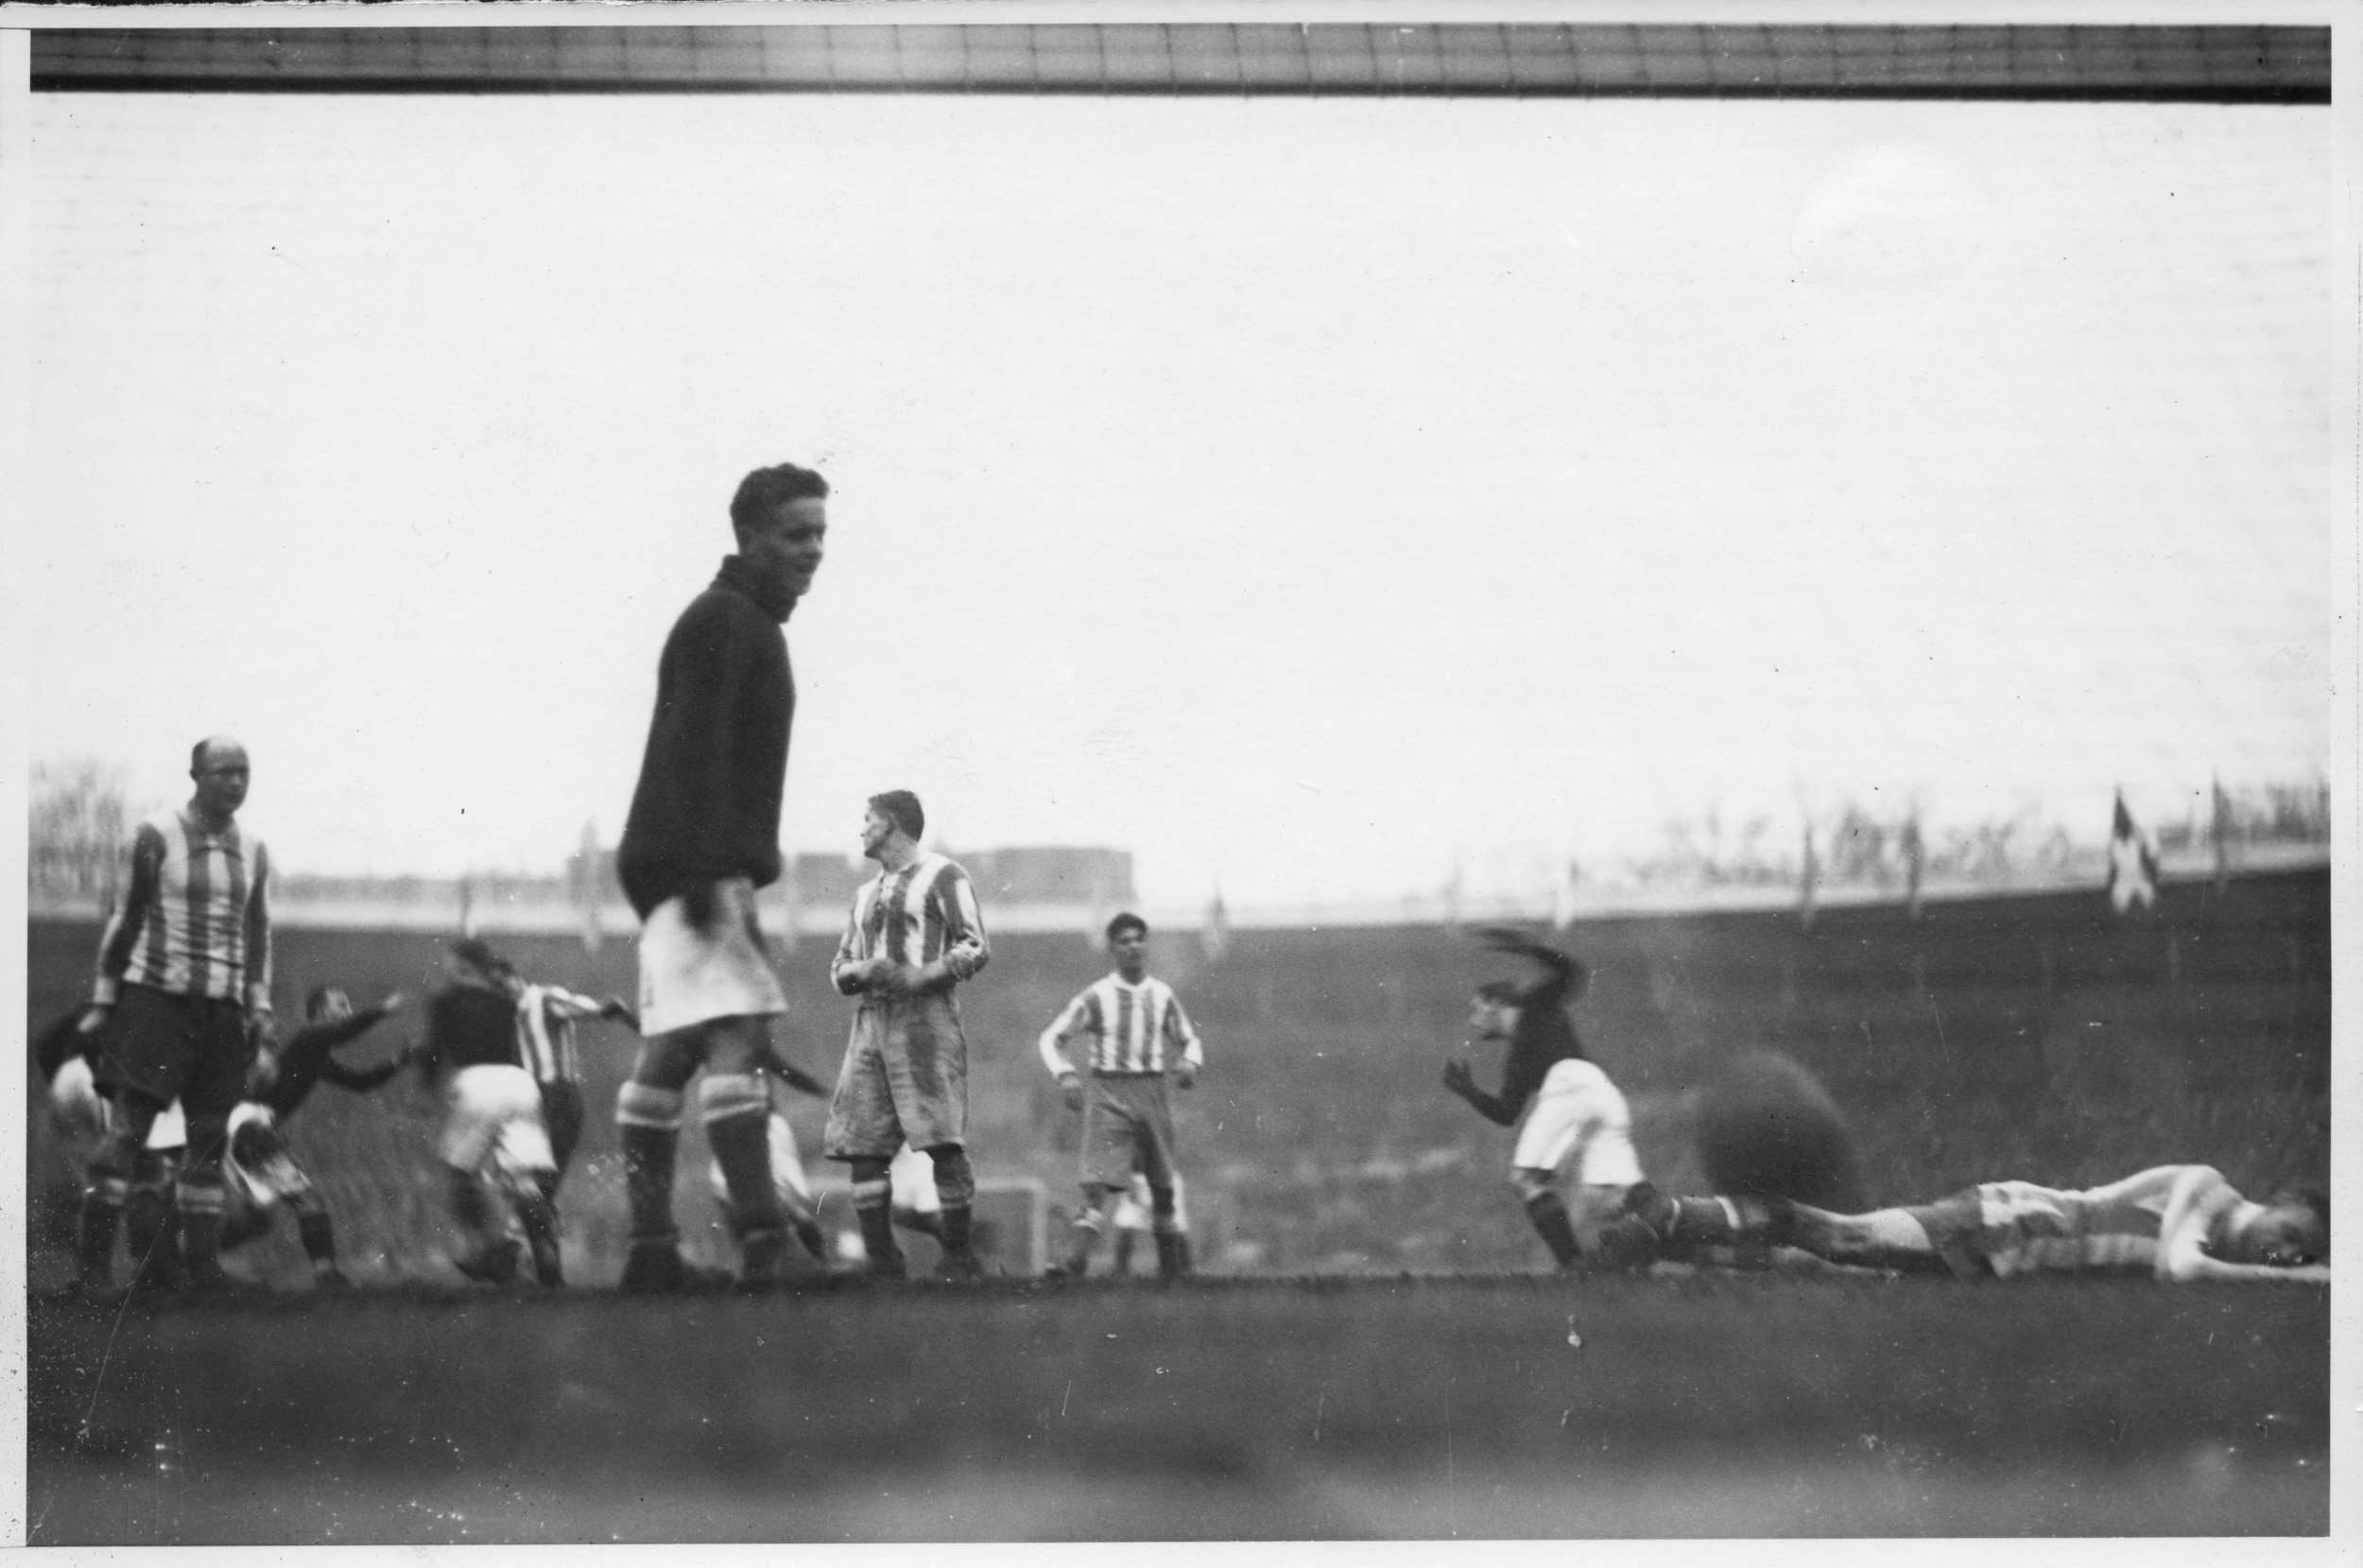 Sunday 17 November 1929  AIK - KB 4-4 (1-1)  Stockholms stadion, Stockholm